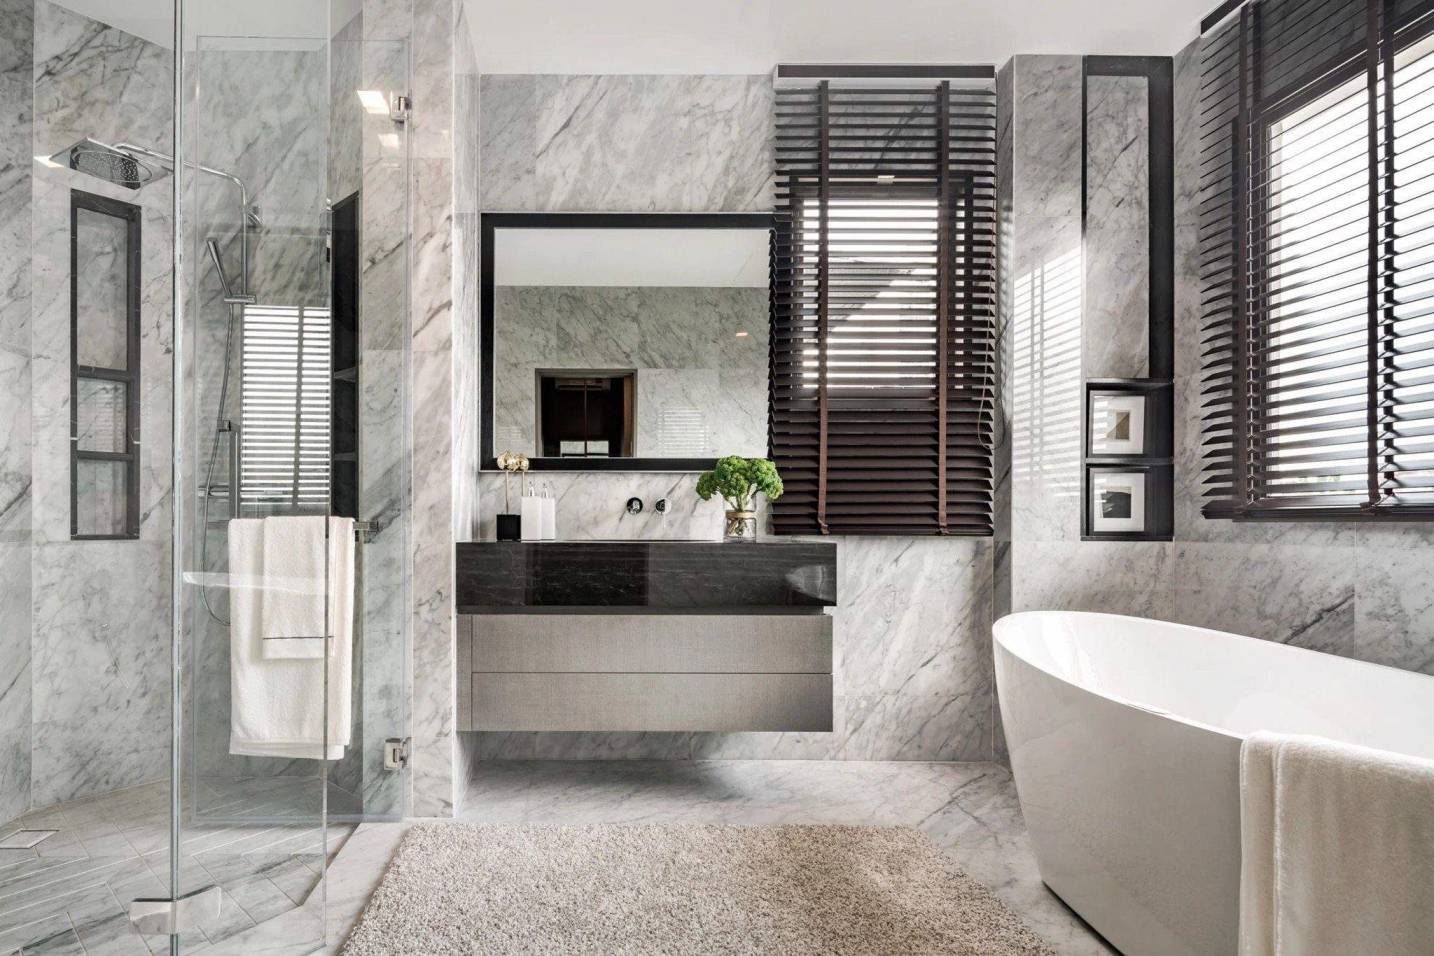 Khu vực phòng tắm nổi bật với tone màu sáng được thiết kế tích hợp bồn tắm tạo không gian thư giãn tuyệt vời